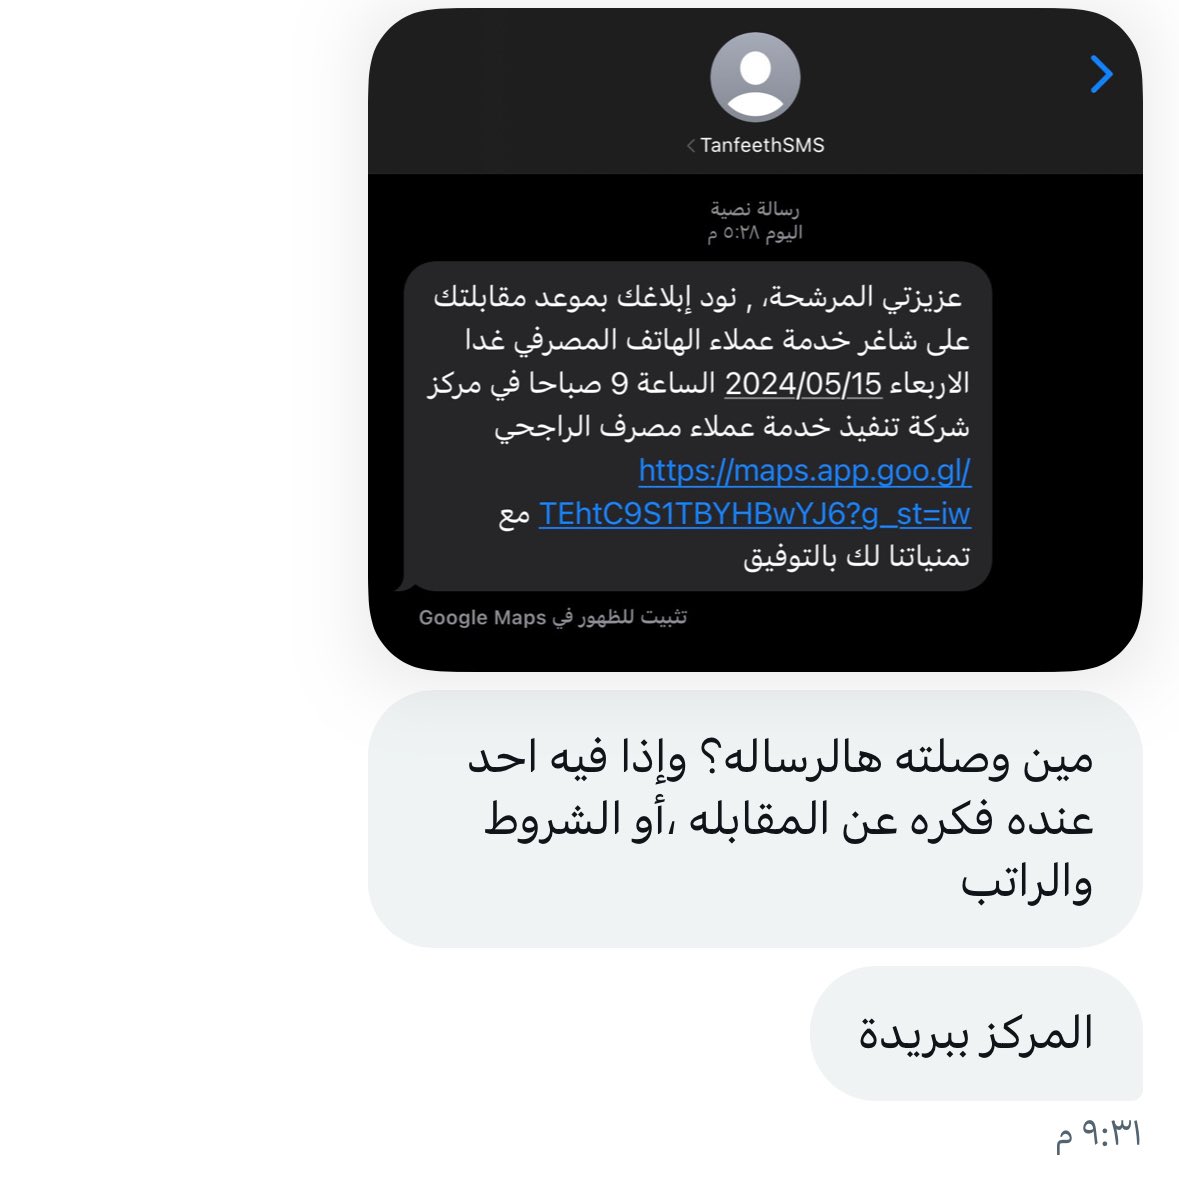 اللي عنده فكره عن مقابلة شركة تنفيذ
خدمة عملاء مصرف الراجحي 👇🏻